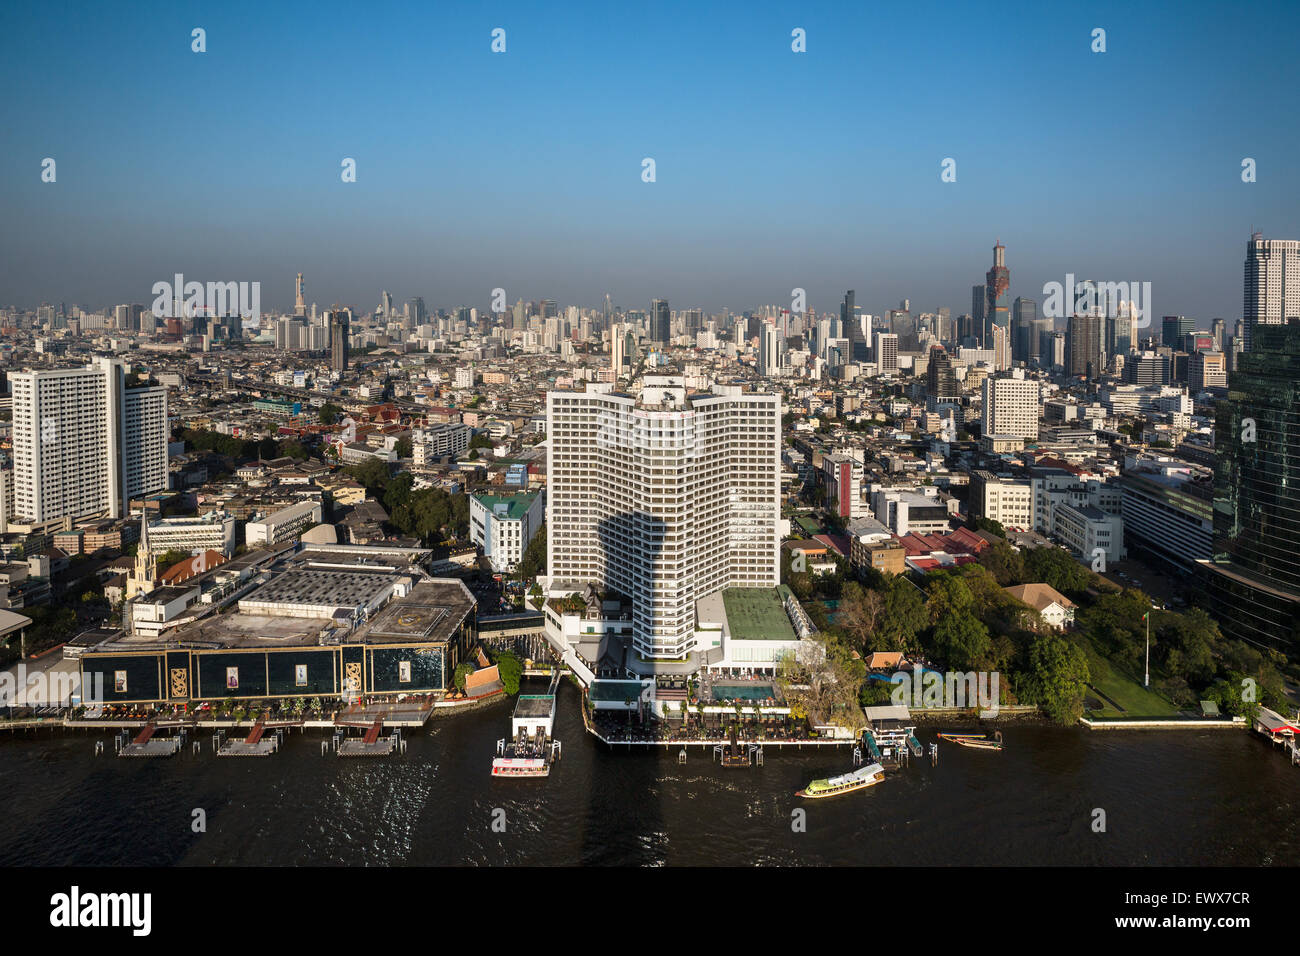 Vue de la ville et l'hôtel Sheraton de Millennium Hilton, Chao Phraya, Bangkok, Thaïlande Banque D'Images